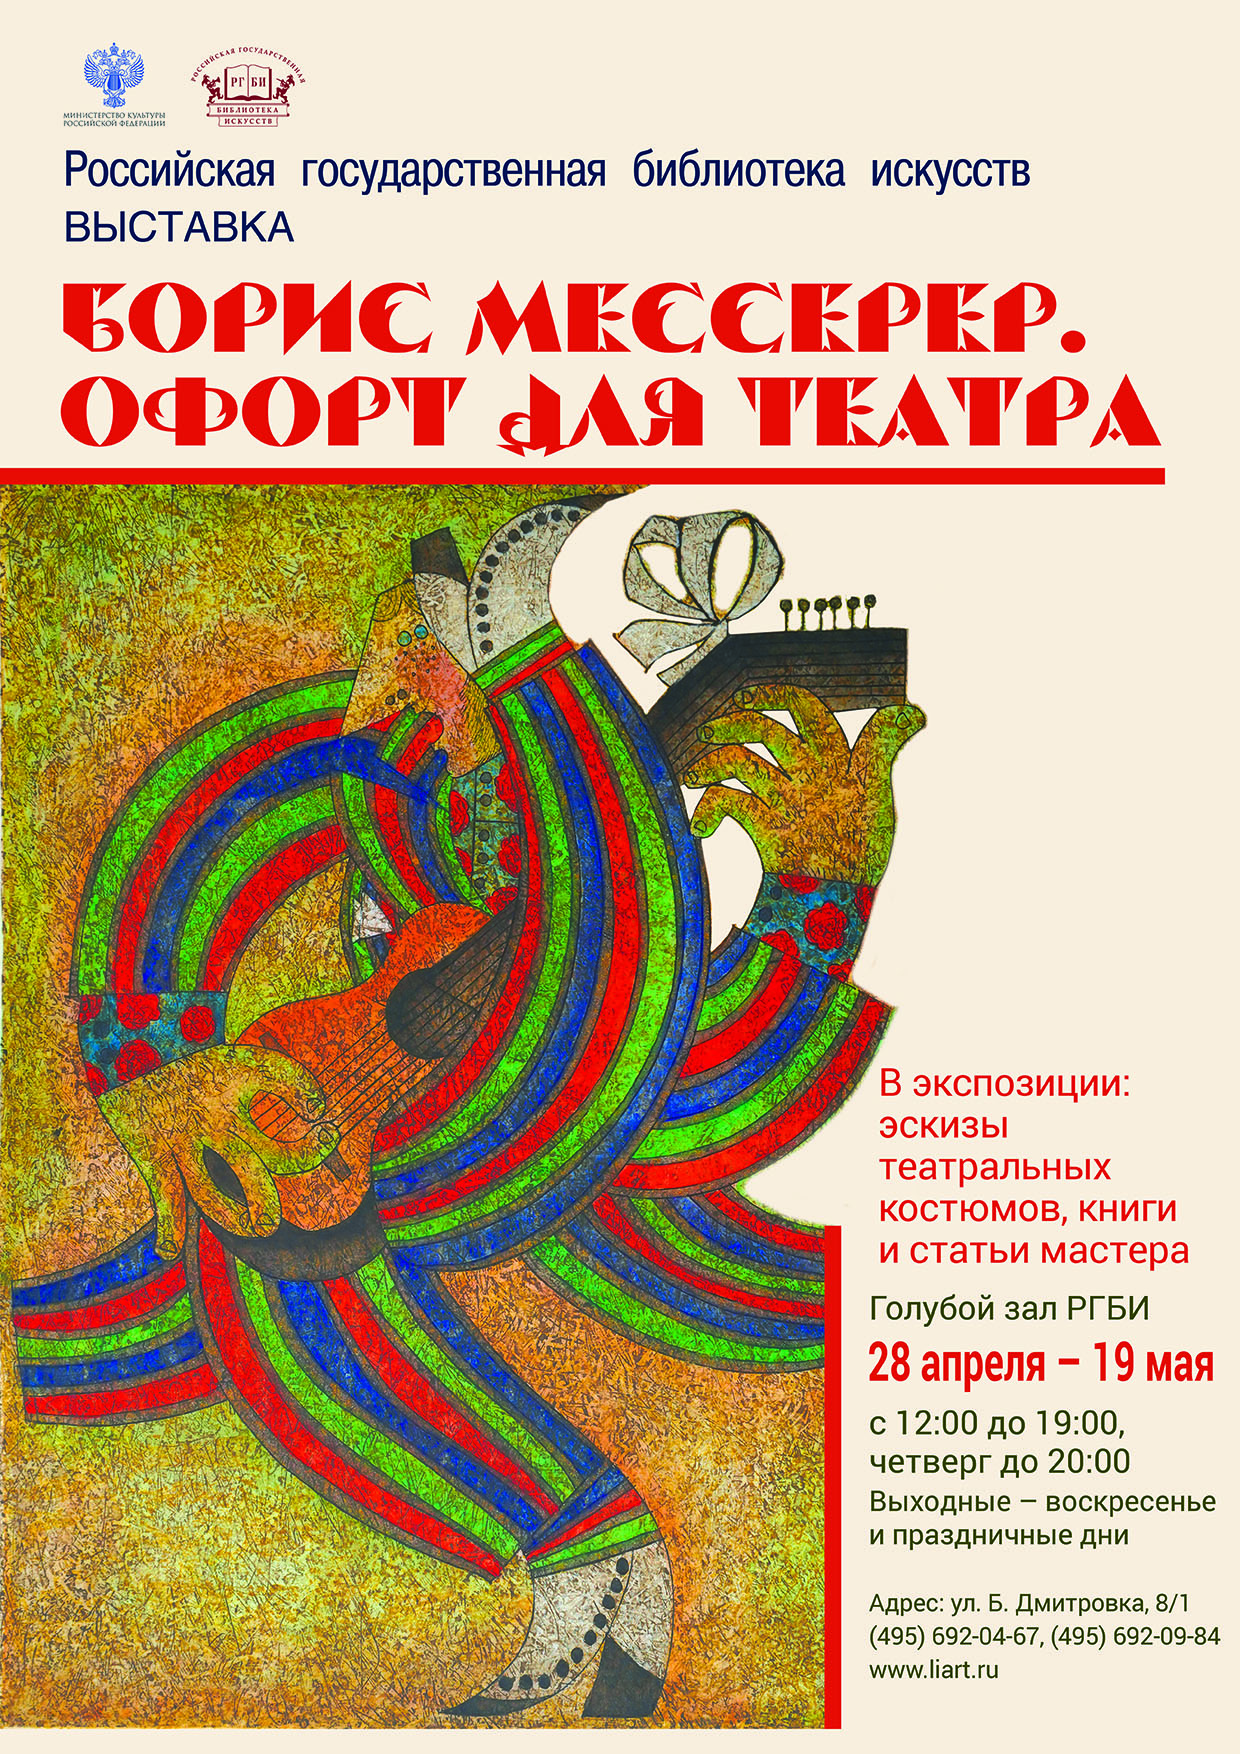 28 апреля в Голубом зале РГБИ открылась выставка «Борис Мессерер. Офорт для театра»